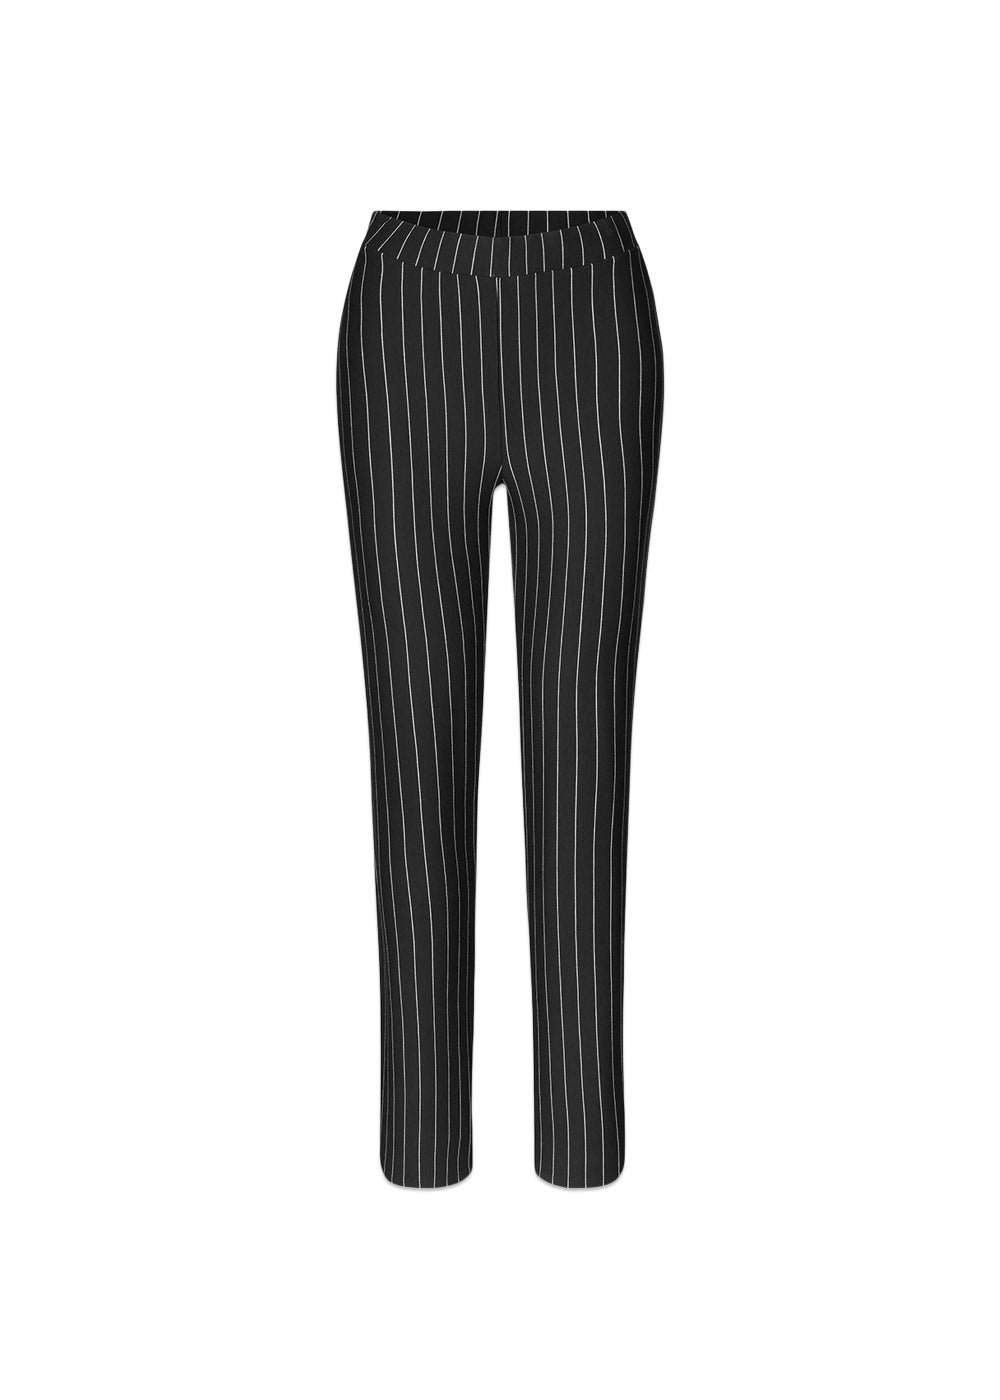 Modströms FadilMD pants - Black Pinstripe. Køb bukser her.